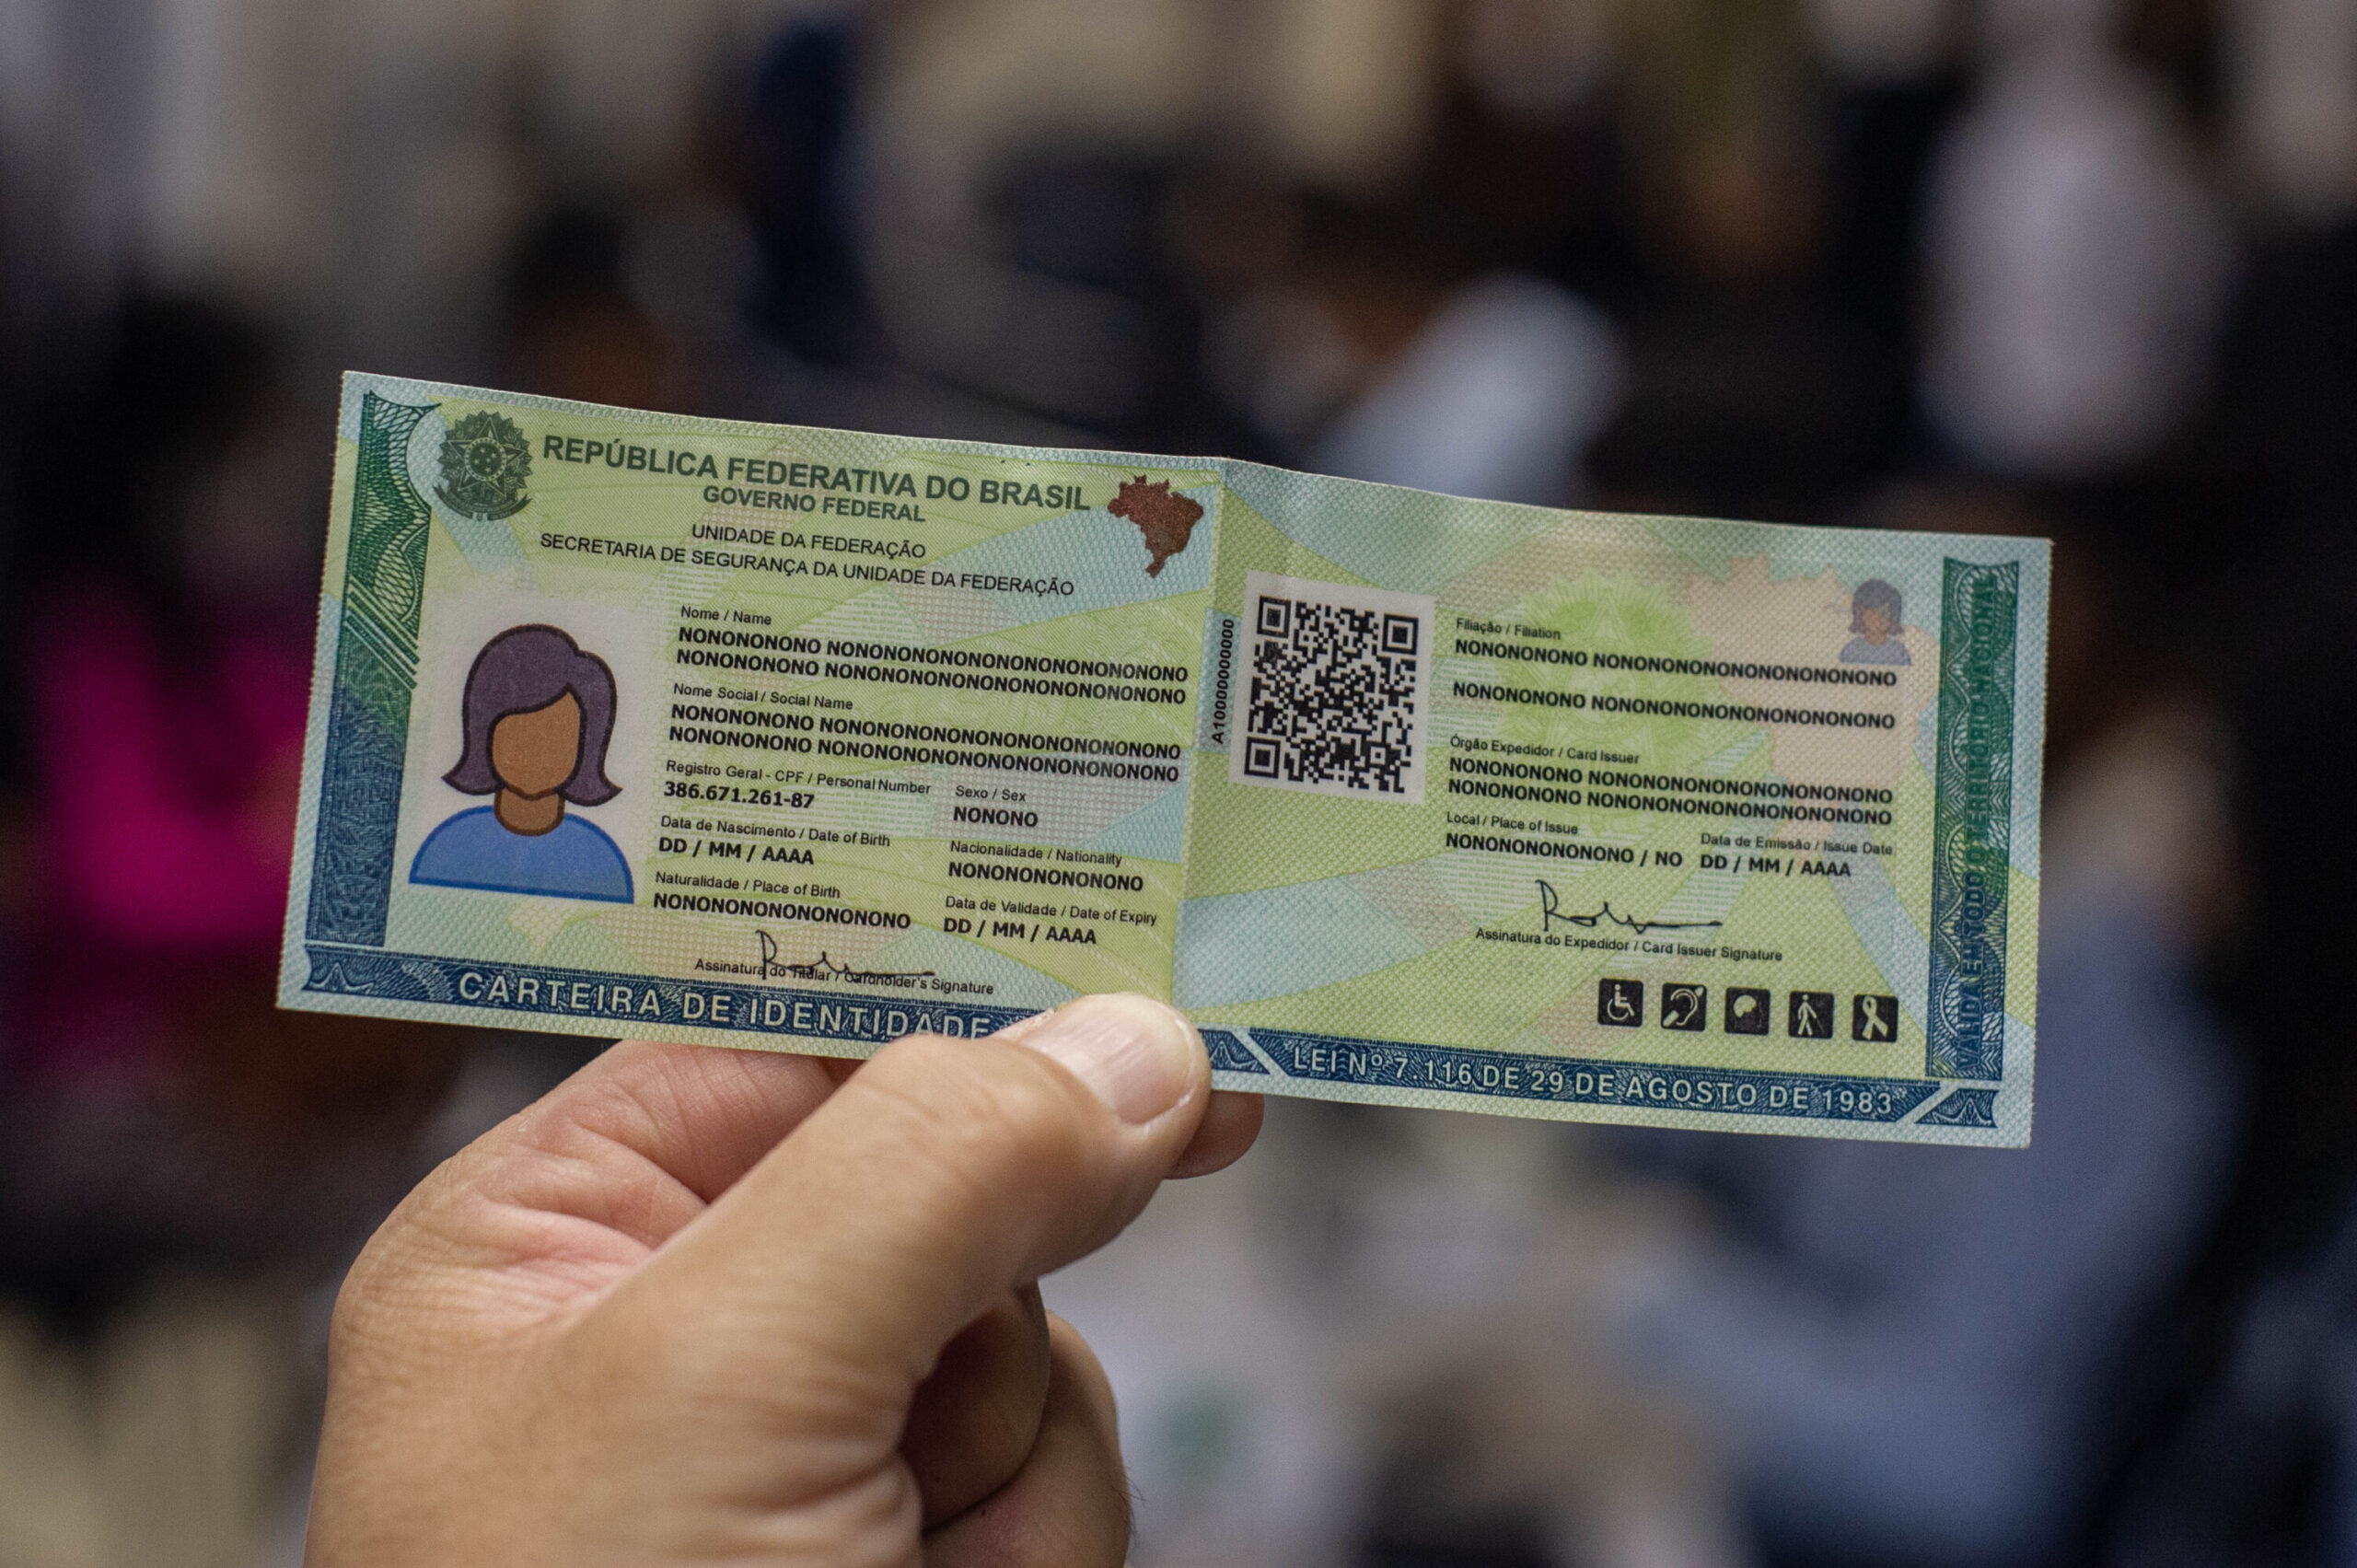 Agendamento de carteiras de identidade é gratuito - IGP-RS